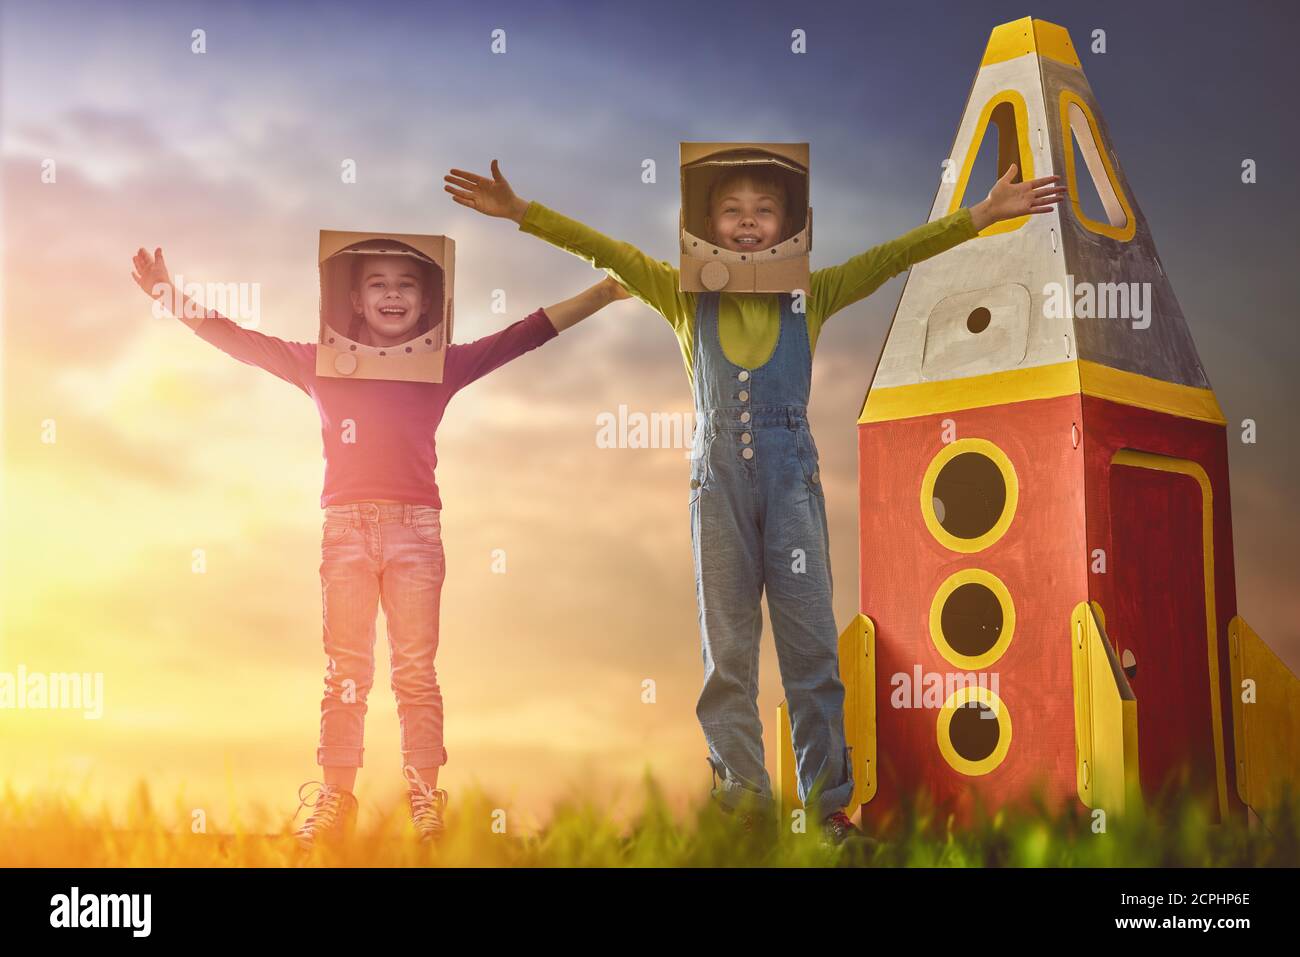 Los niños en astronautas disfrazan con cohetes de juguete jugando y soñando  con convertirse en un hombre espacial. Retrato de niños divertidos sobre un  fondo de cielo estrellado al atardecer Fotografía de